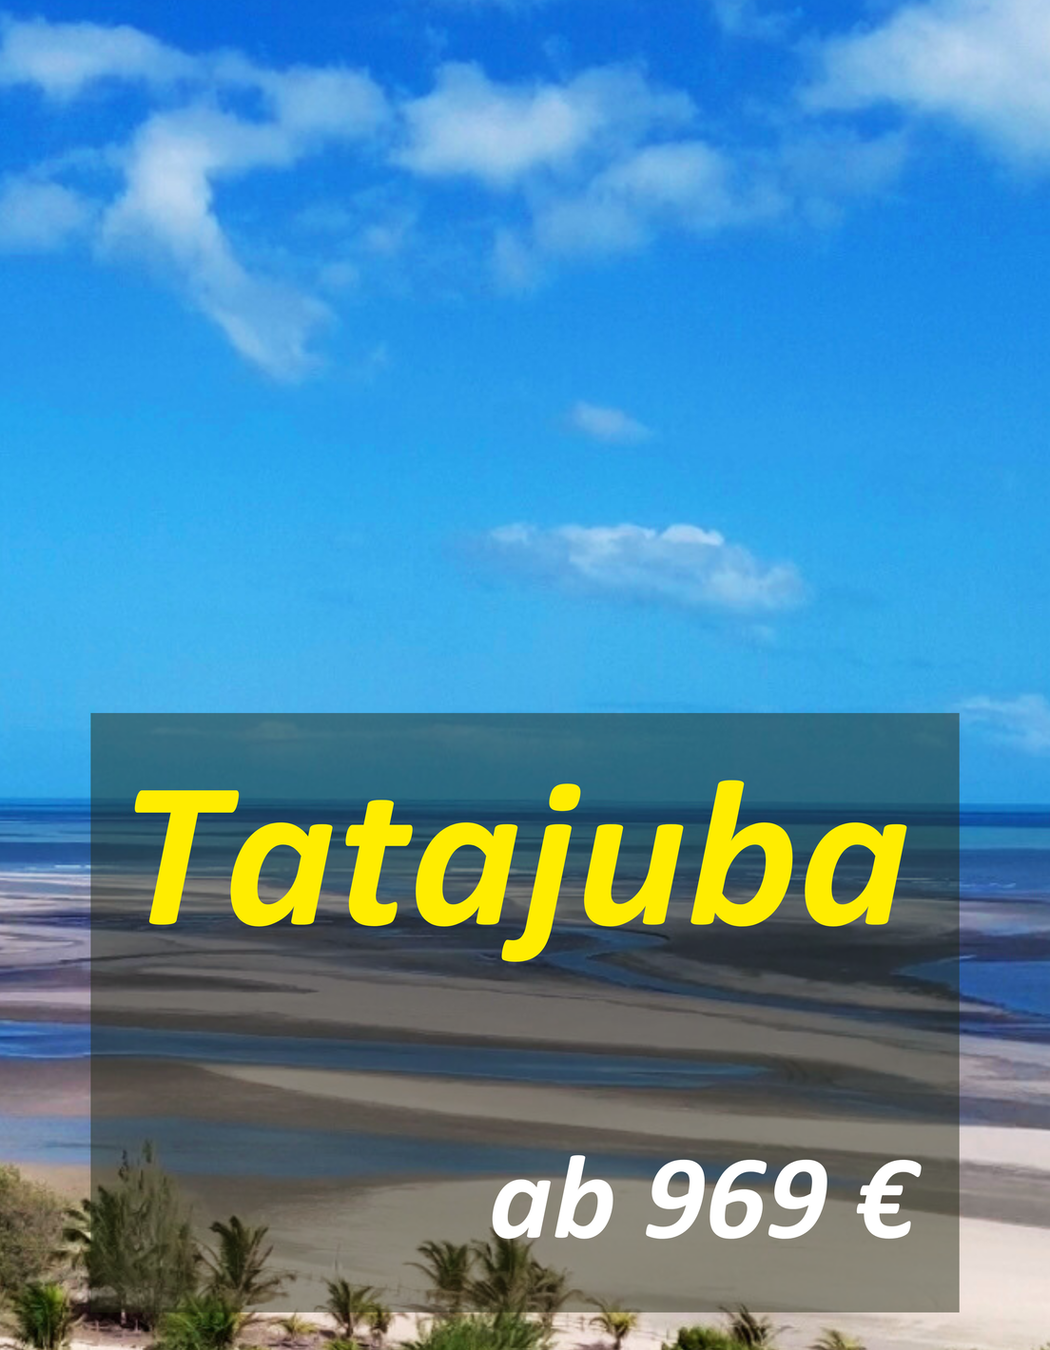 Kiten im Starkwindparadies Tatajuba